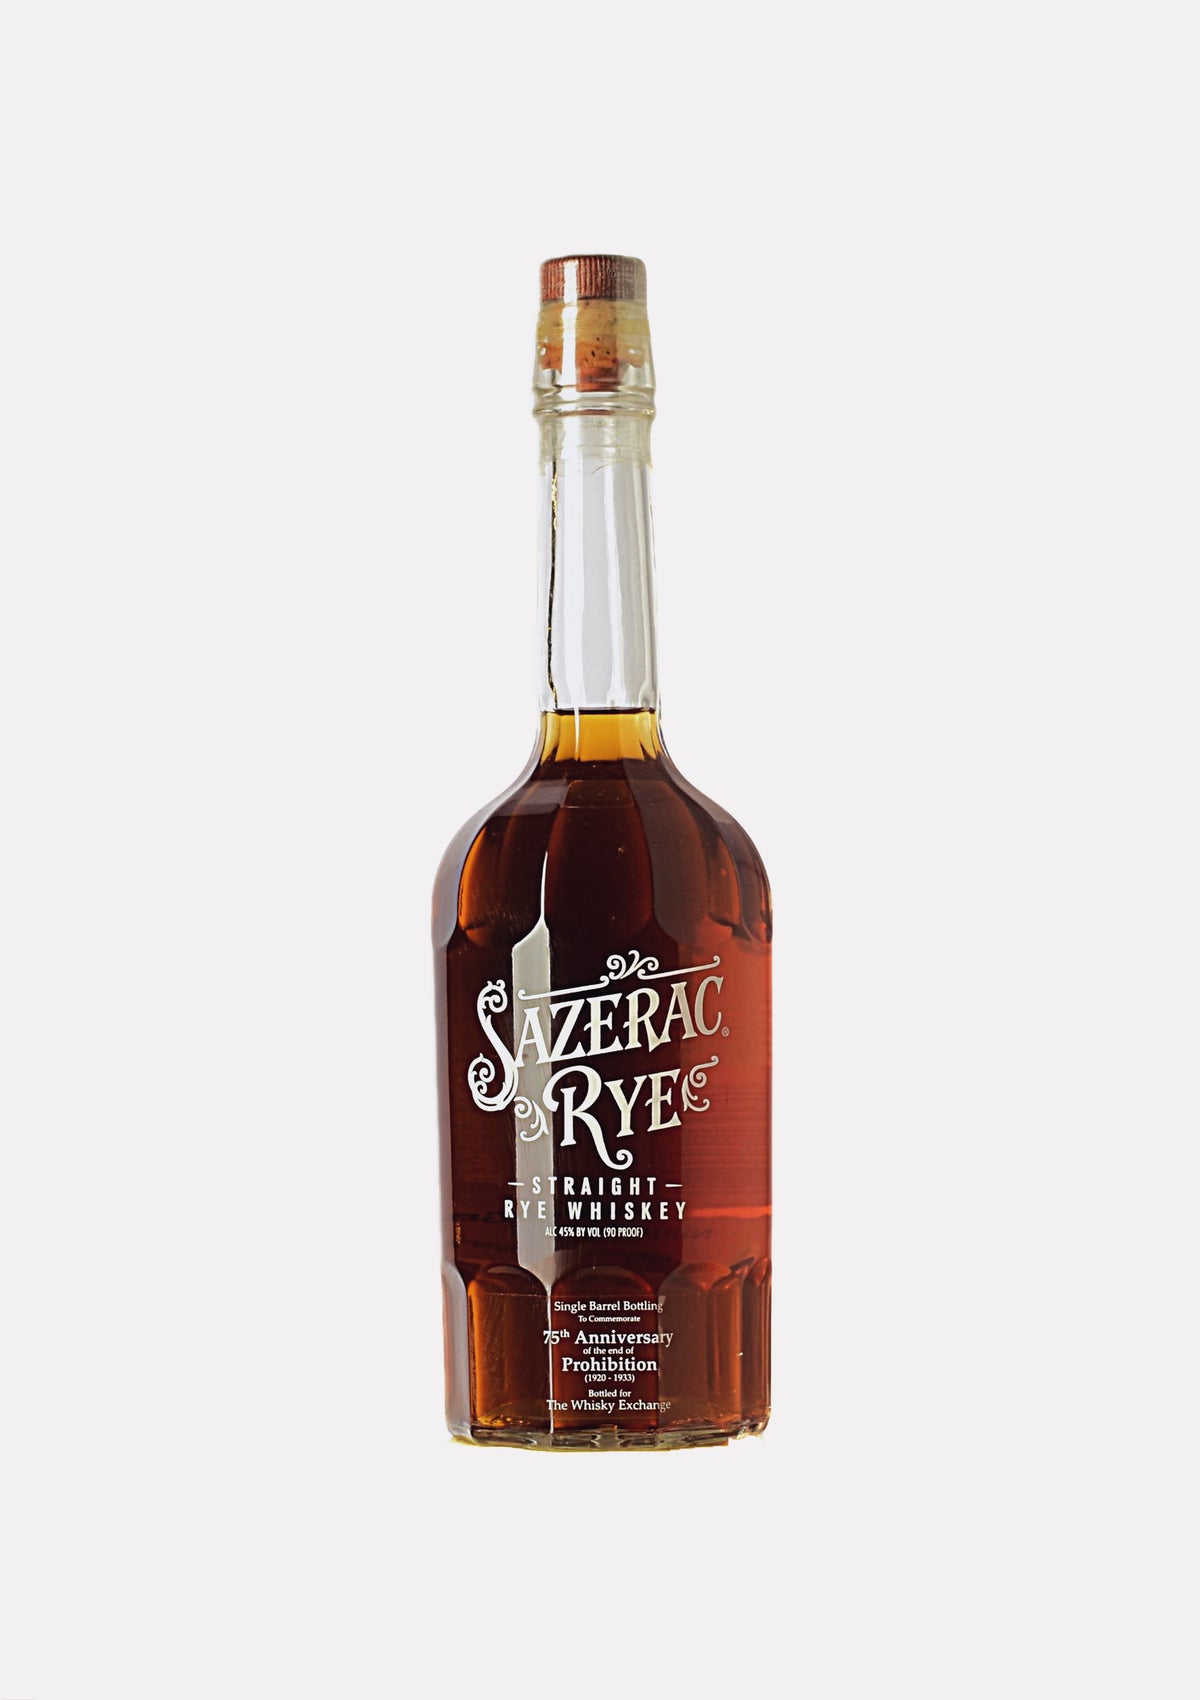 Sazerac Rye Straight Rye Whiskey 75th Anniversary Bottled for The Whisky Exchange